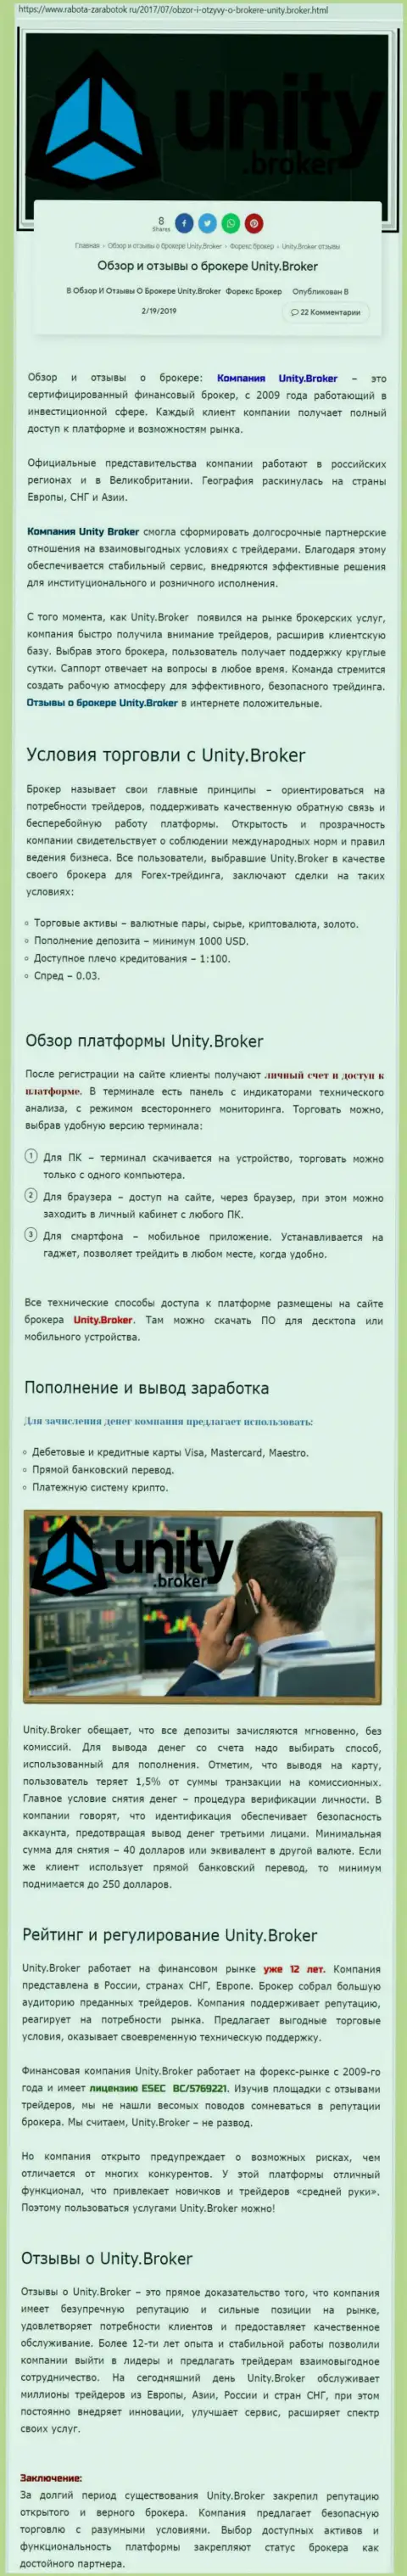 Обзорная информация форекс дилинговой компании Юнити Брокер на сайте Rabota Zarabotok Ru